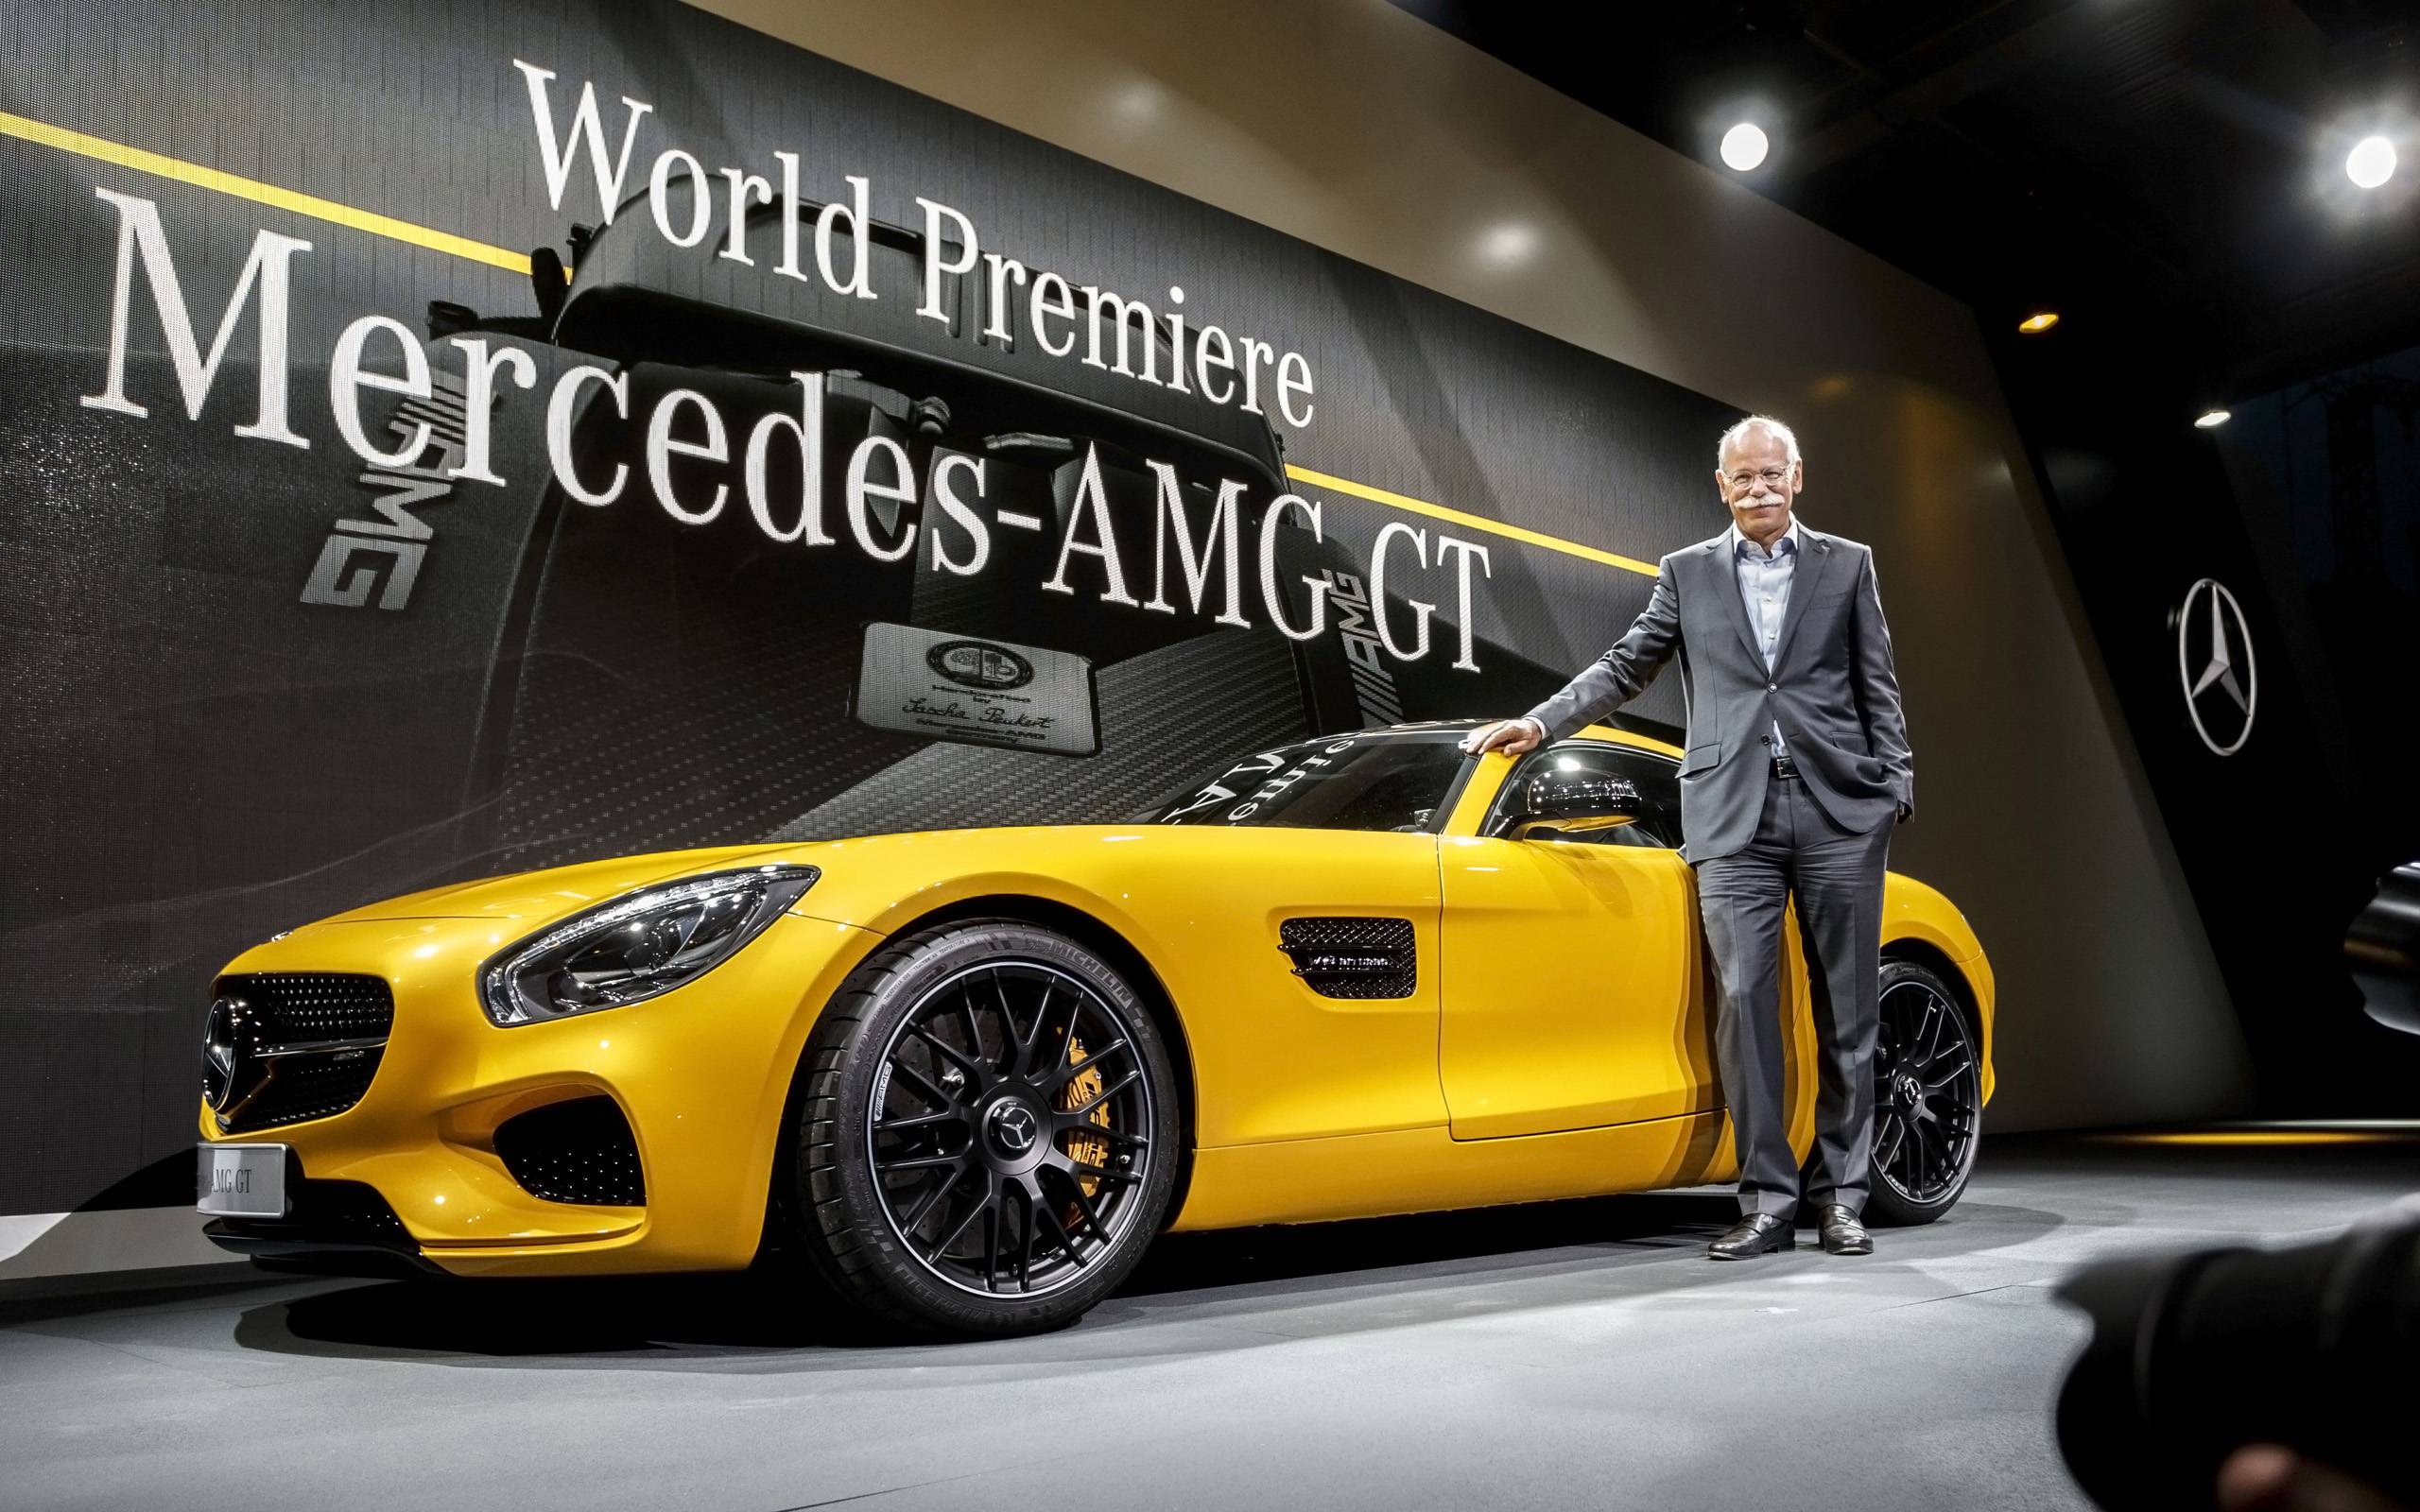 Mercedes-amg e performance: новые технологии воплощаются в жизнь